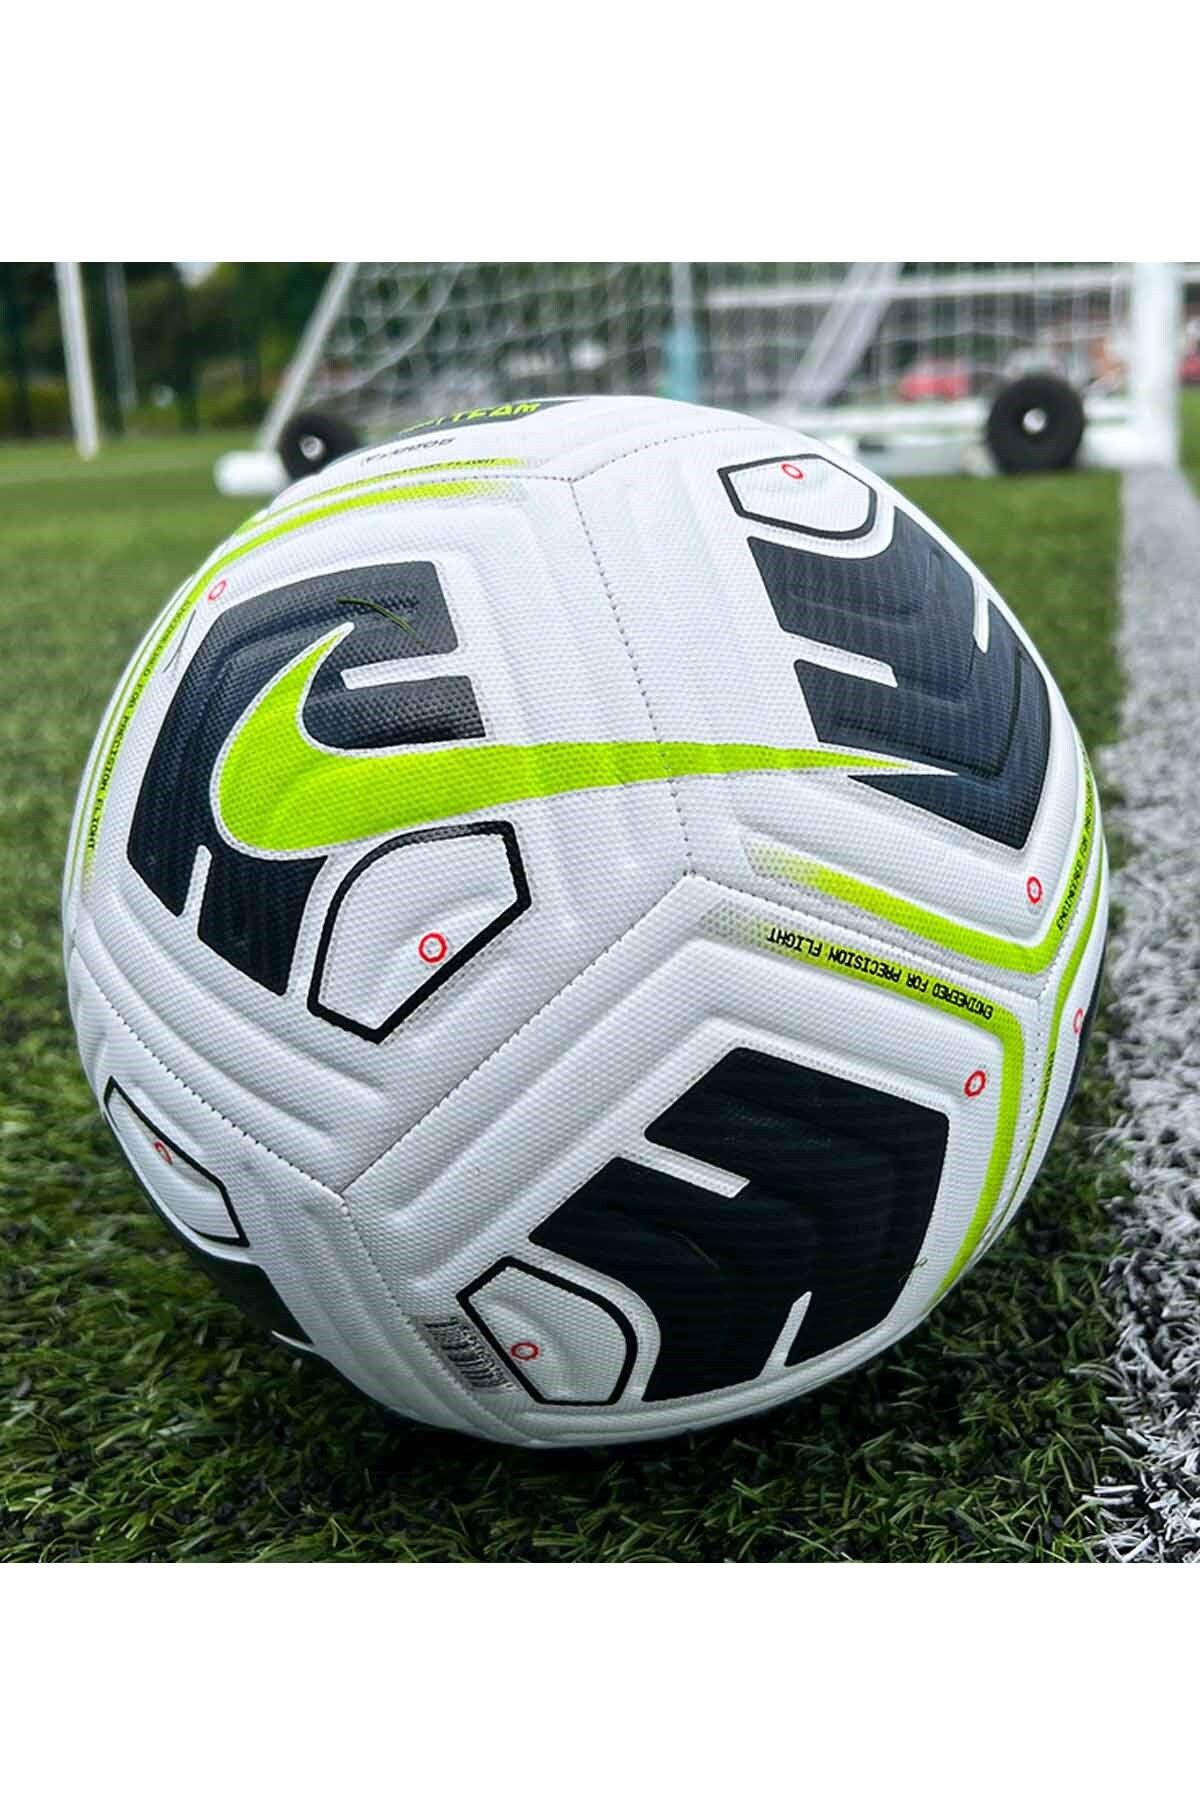 Nike Futbol Topu Unisex Futbol Topu Cu8047-100-1-beyaz-y.